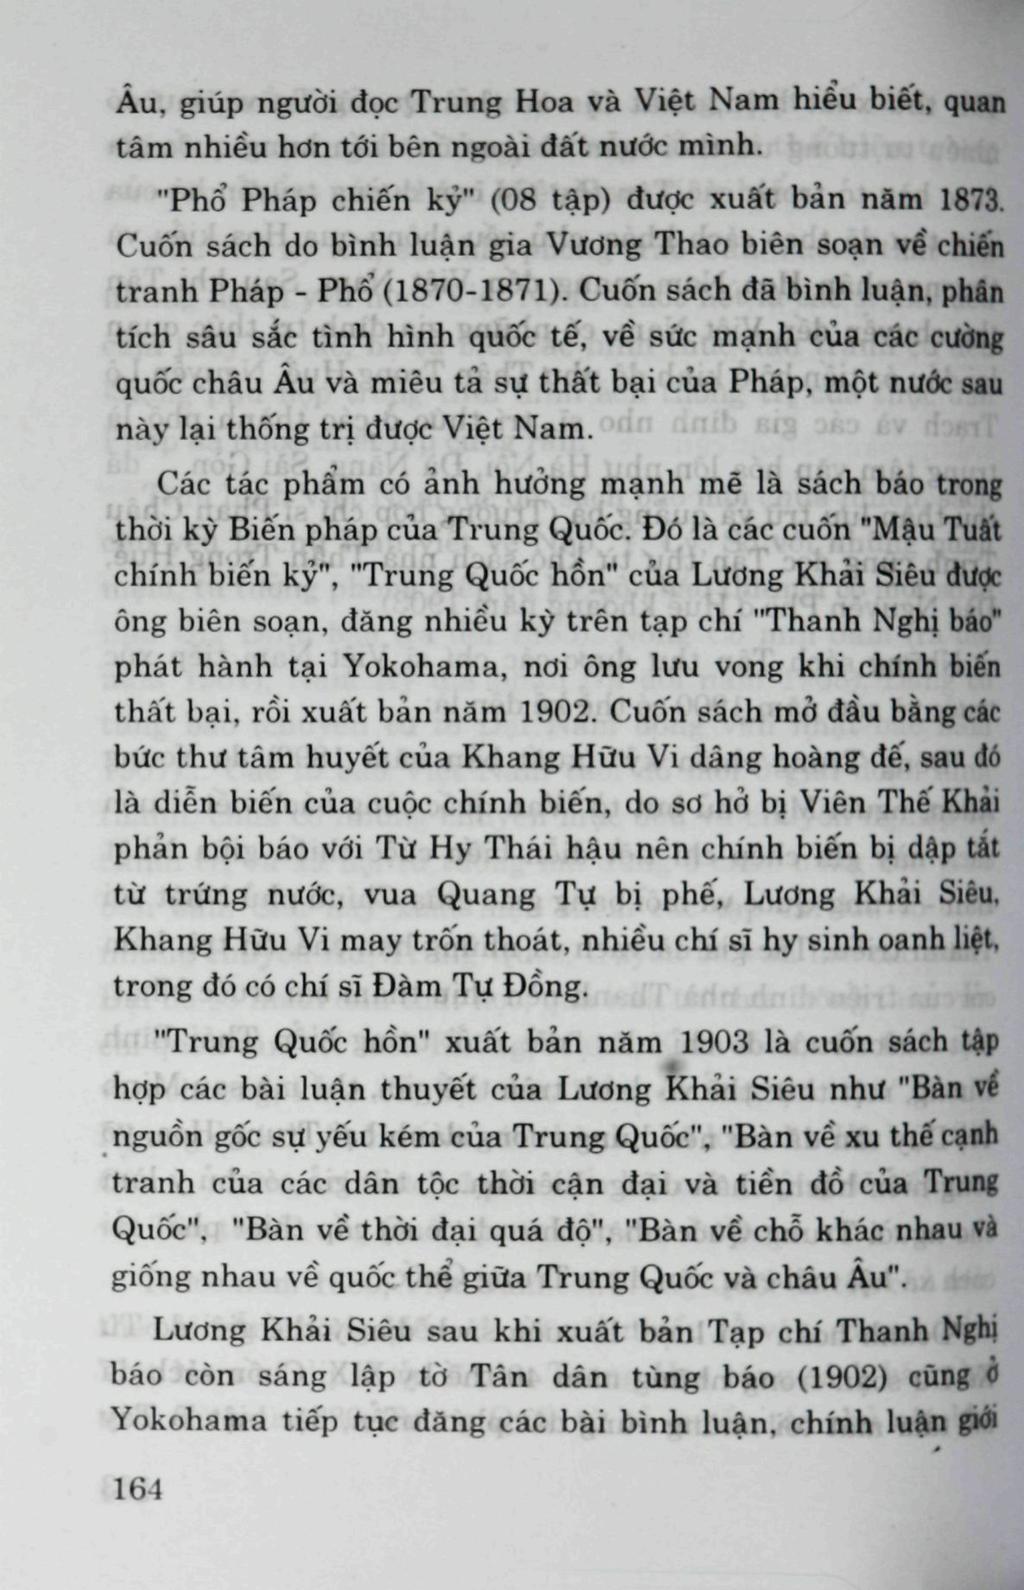 Àu. giùp nguòi doc Trung Hoa va Viét Nam biéu biét, quan tàm nhiéu hdn tói ben ngoài dàt nuóc minh. "Pho Phàp chié'n ky" (08 tàp) dudc xuàt bàn nàm 1873.